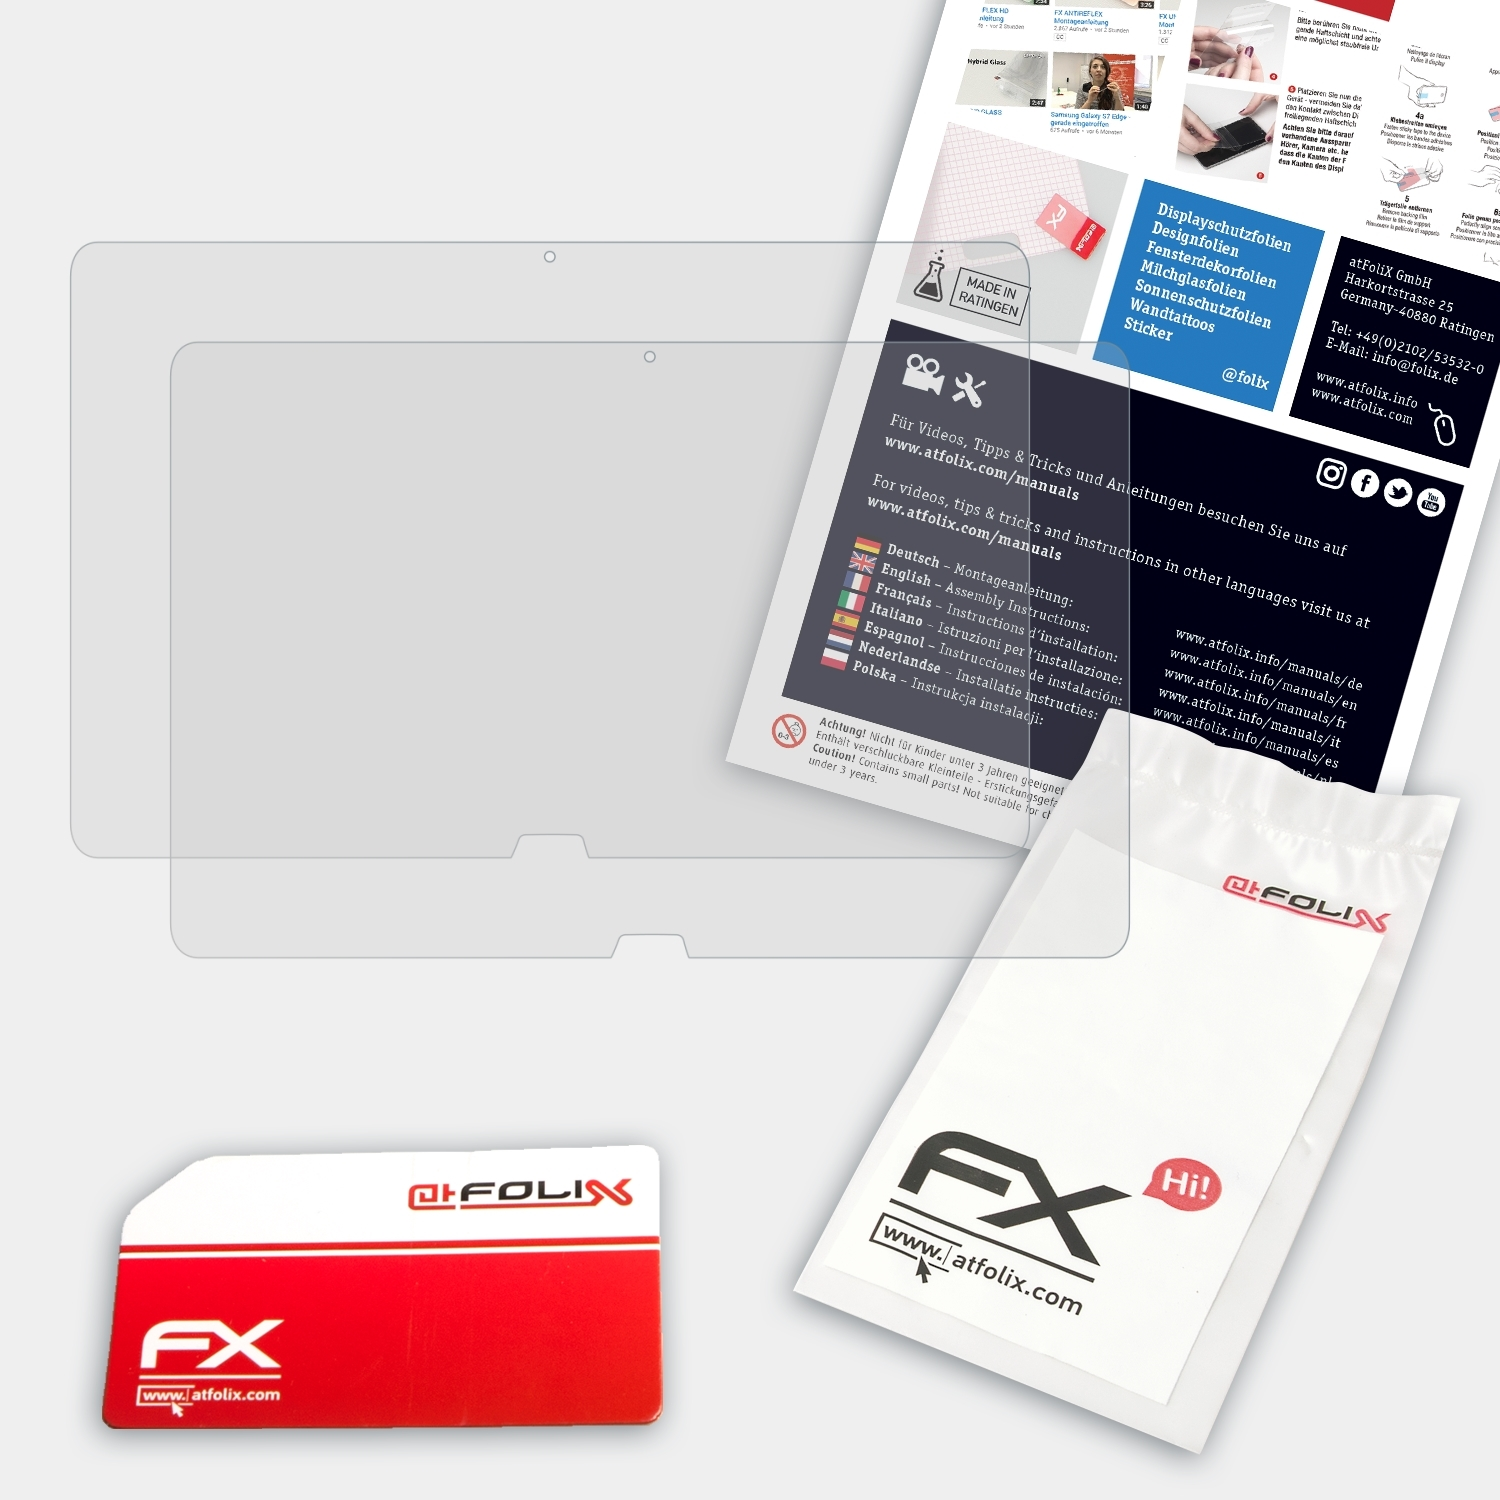 ATFOLIX FX-Antireflex 2x 13A) Sony Fit VAIO Displayschutz(für